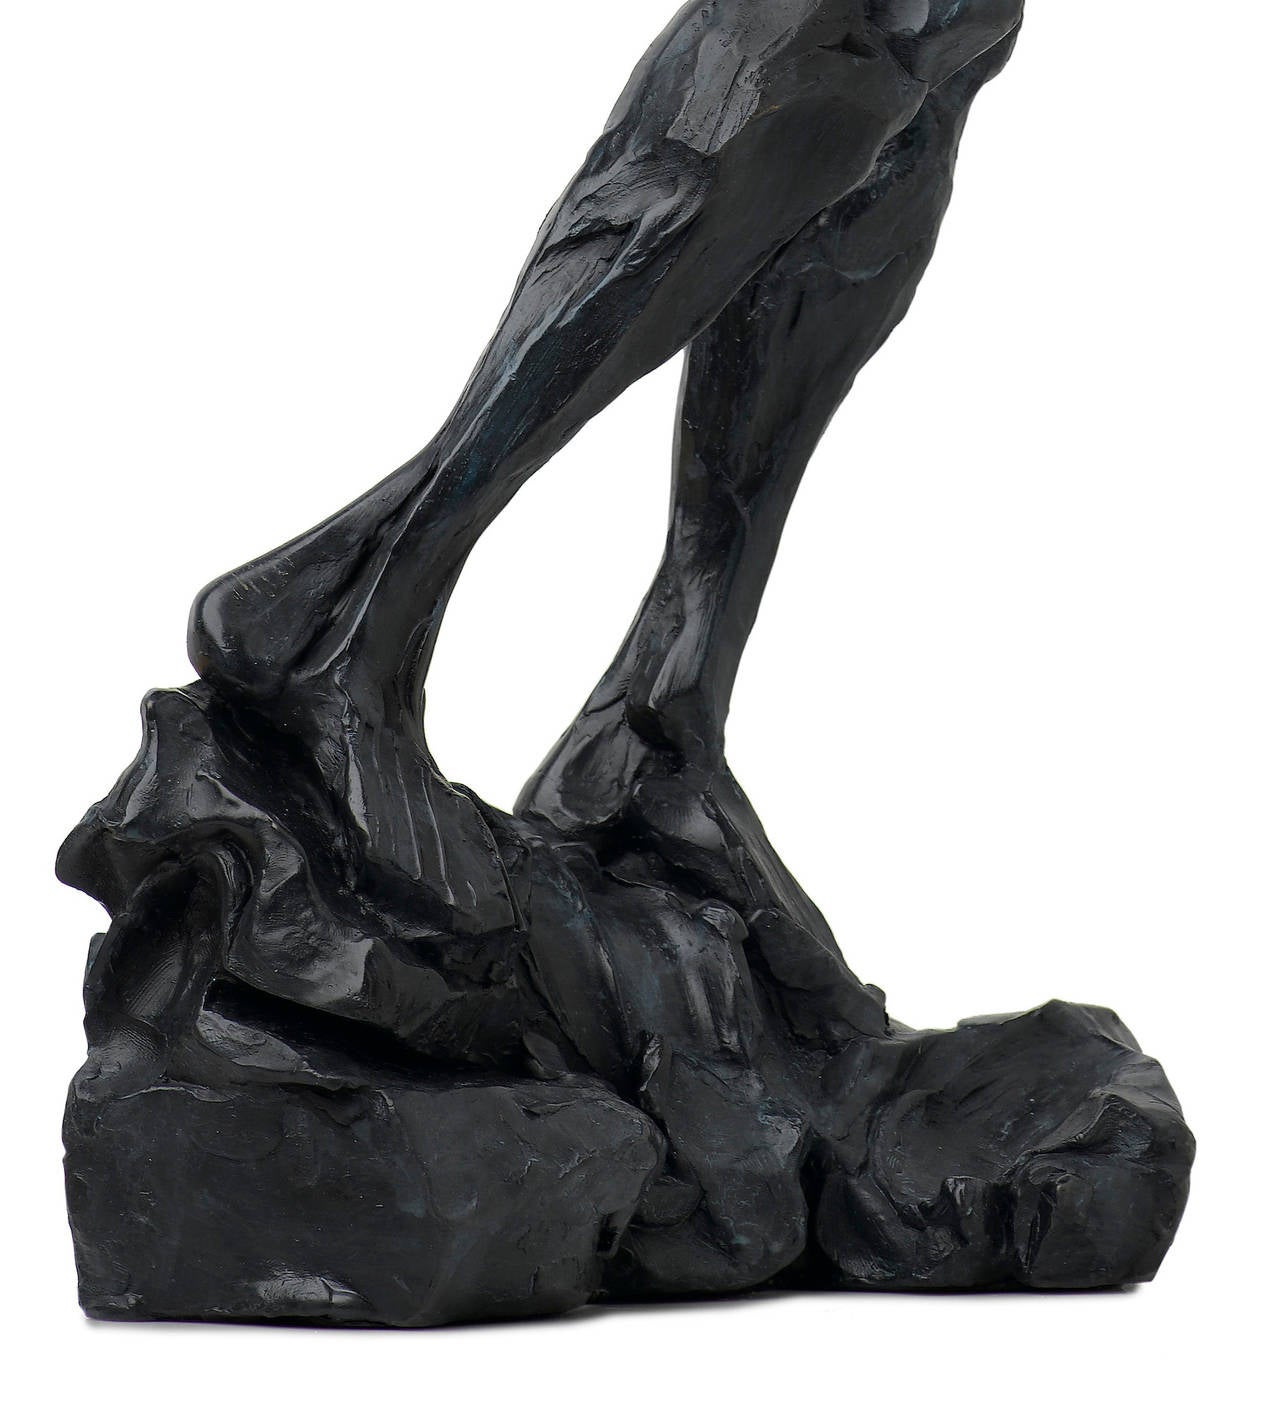 Puissante sculpture féminine nue en bronze prise dans un mouvement de transition. La patine de cette sculpture texturée est d'un bleu-noir profond. Le formalisme moderne et dynamique qui s'écarte du réalisme permet au spectateur de se concentrer sur